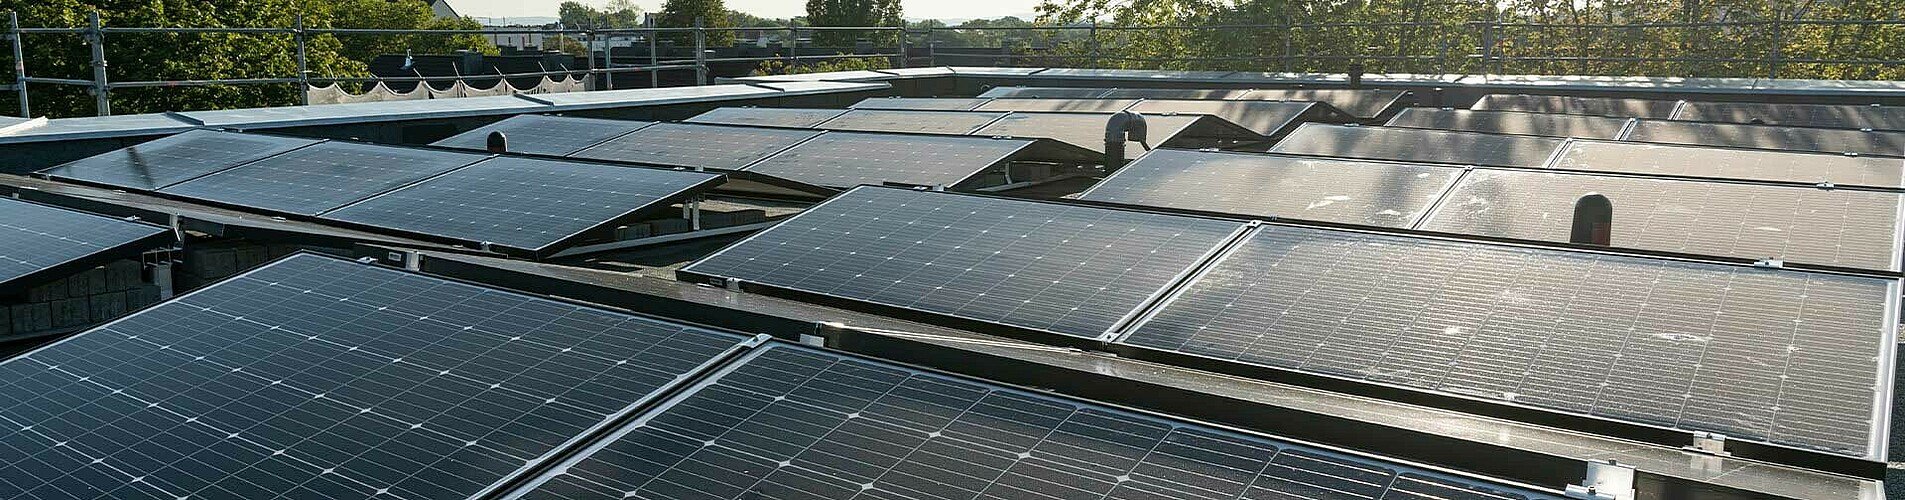 Solarpanels auf dem Dach eines GAG-Hauses